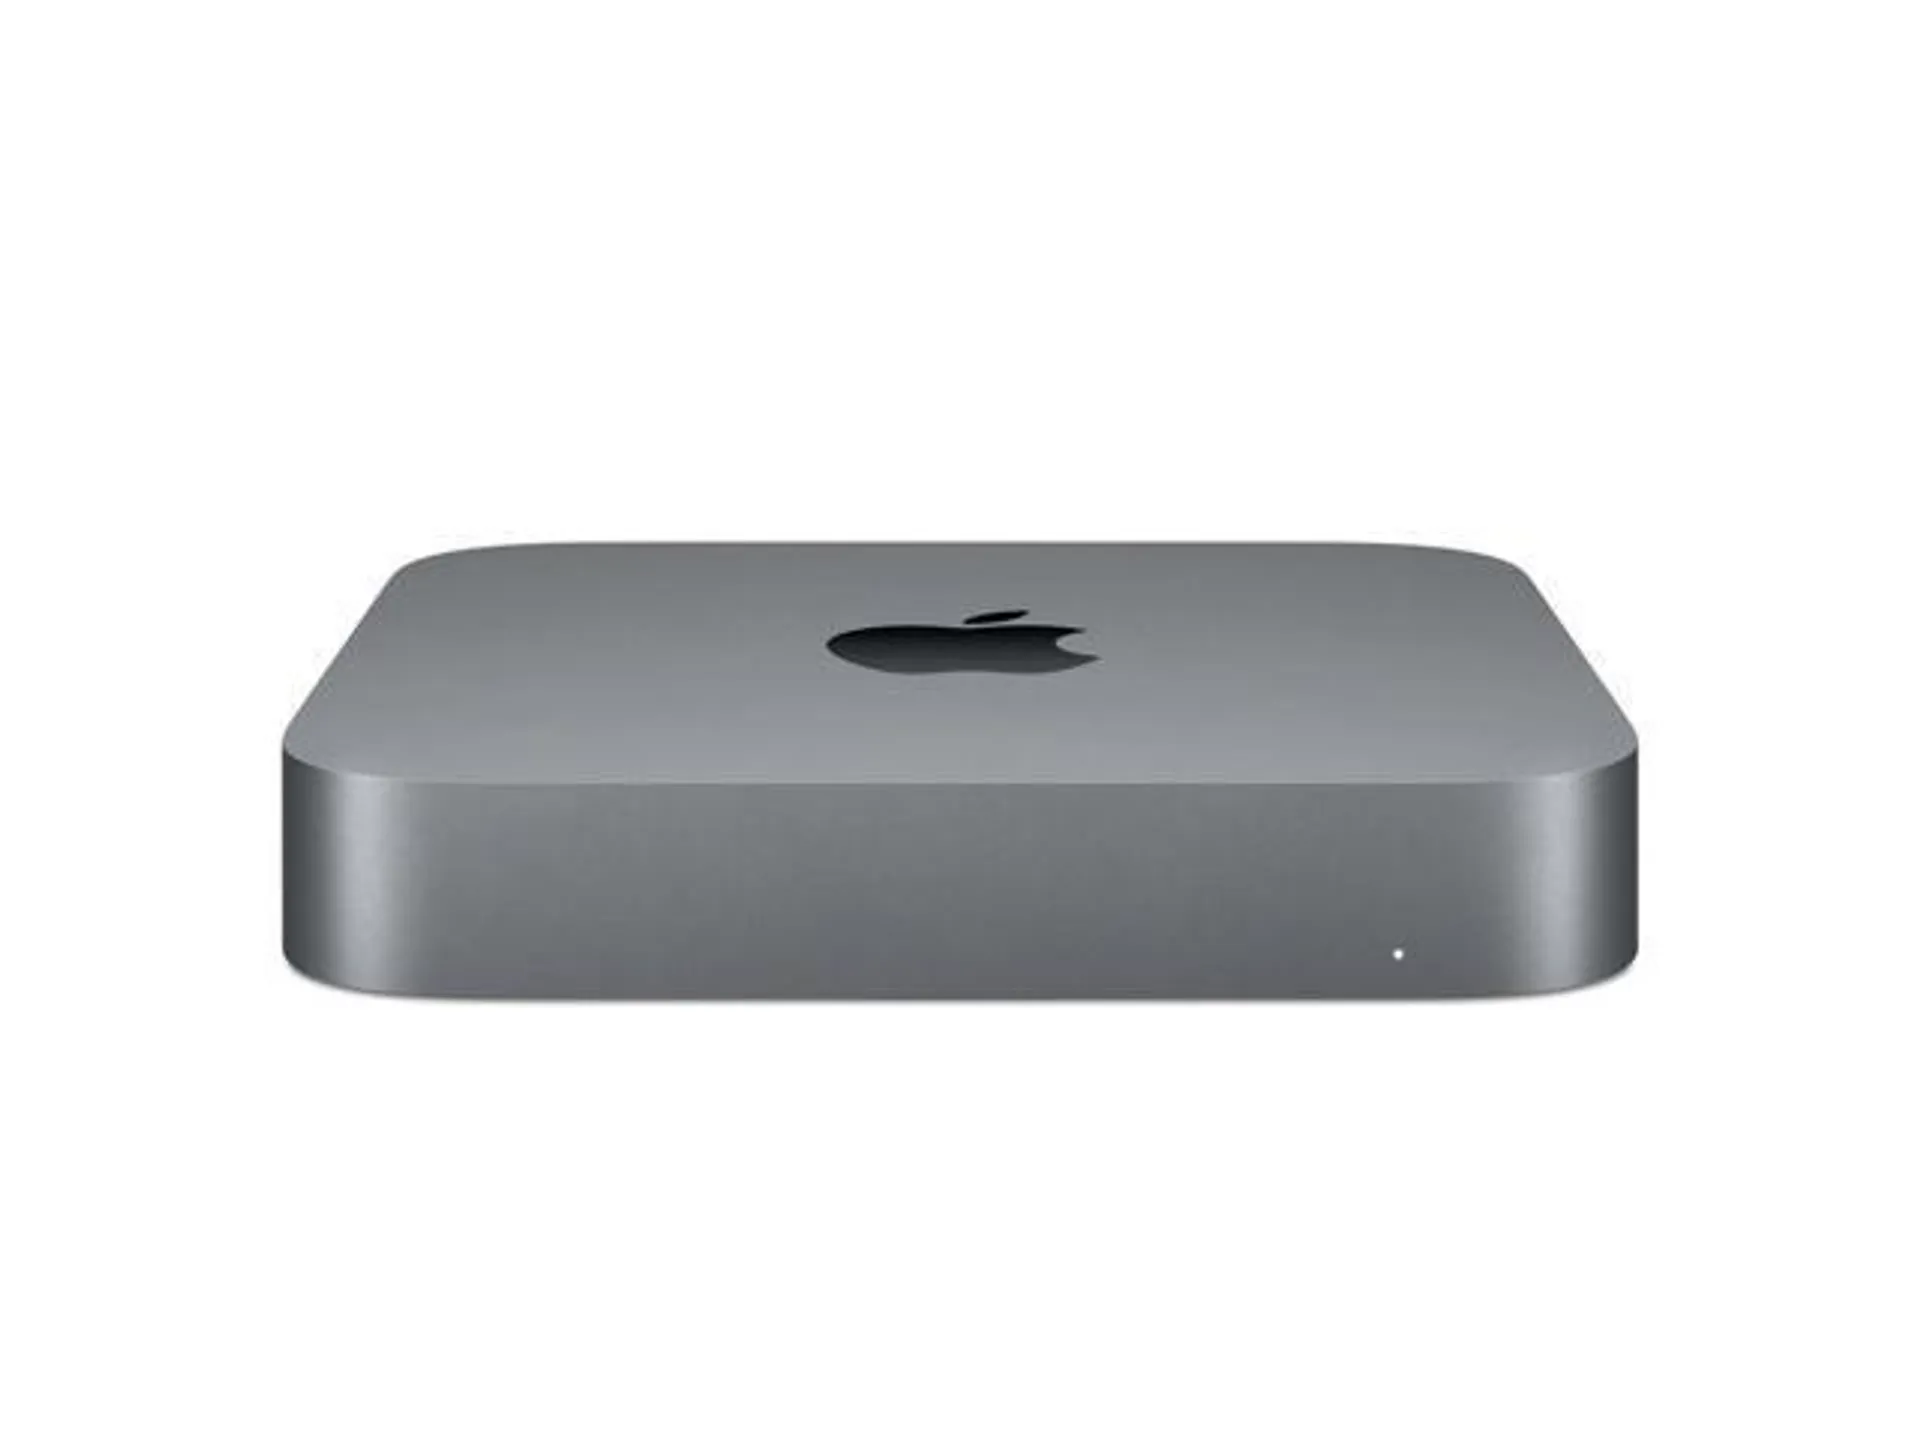 Apple Mac mini Core i3 3.6GHz 8GB RAM 128GB SSD Space Gray MRTR2LL/A (2018)